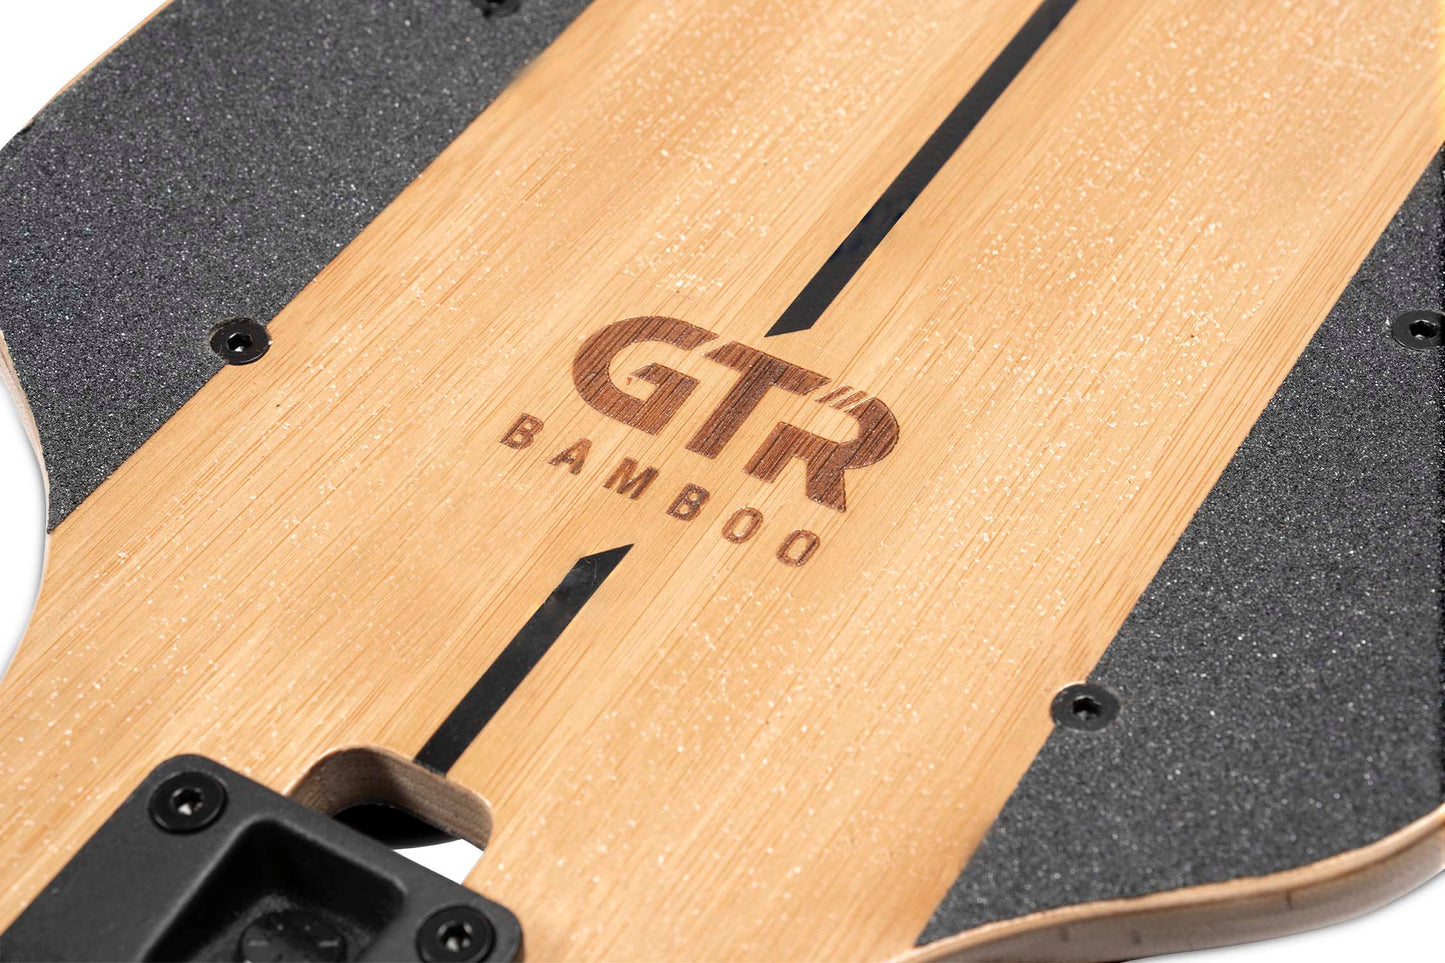 Skate Eléctrico Bamboo GTR Serie 2 todoterreno | Monopatin Electrico